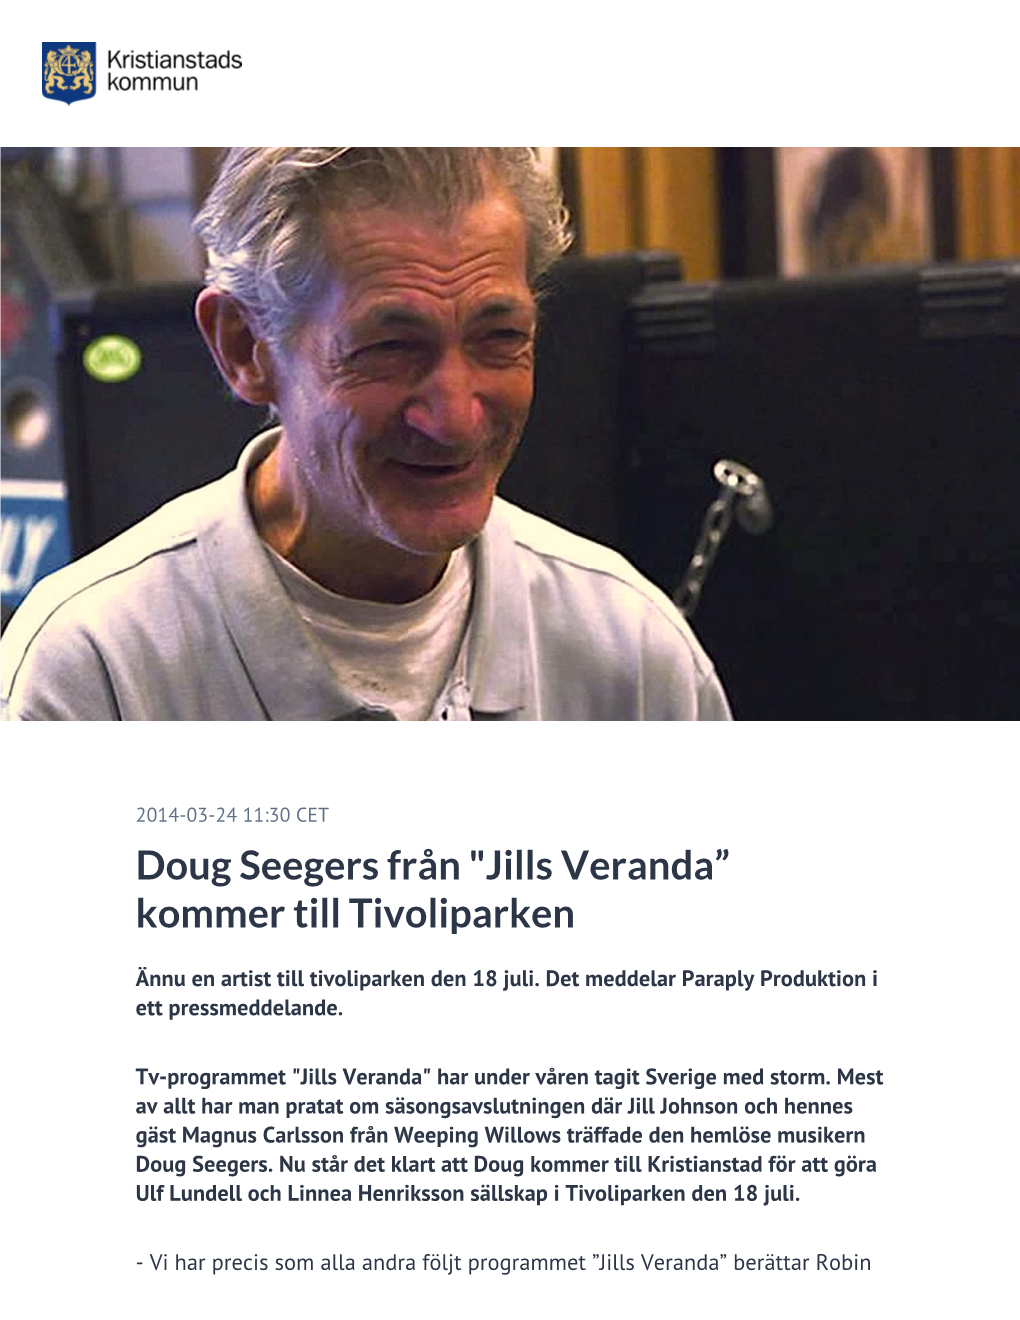 Doug Seegers Från "Jills Veranda” Kommer Till Tivoliparken